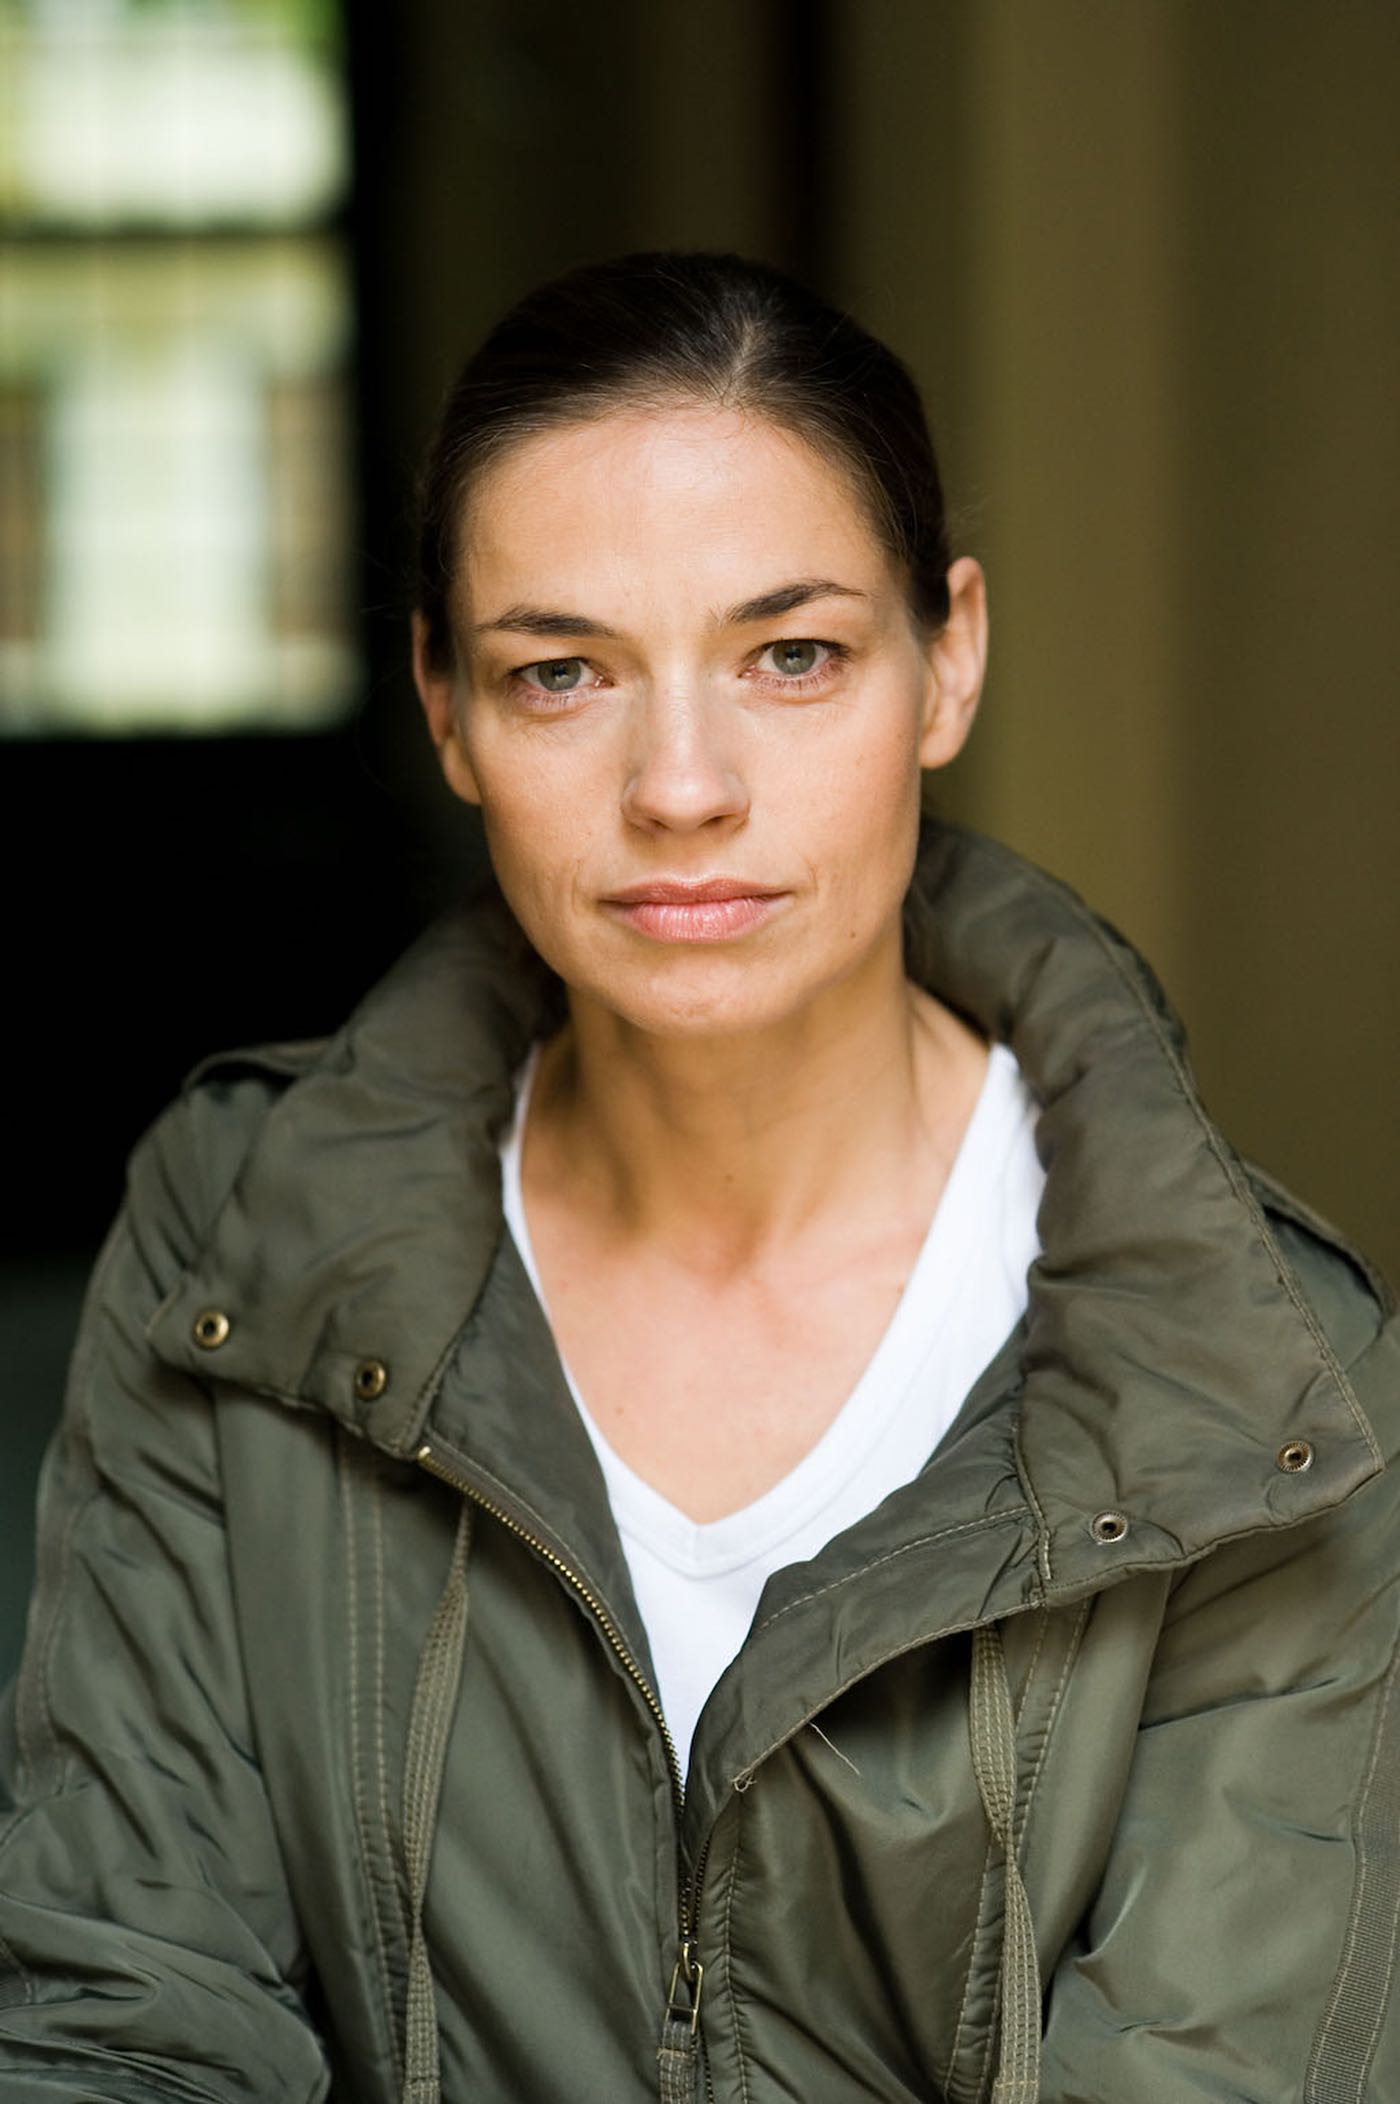 Ute Wieckhorst, Schauspielerin (Foto: Heike Steinweg, 2010)